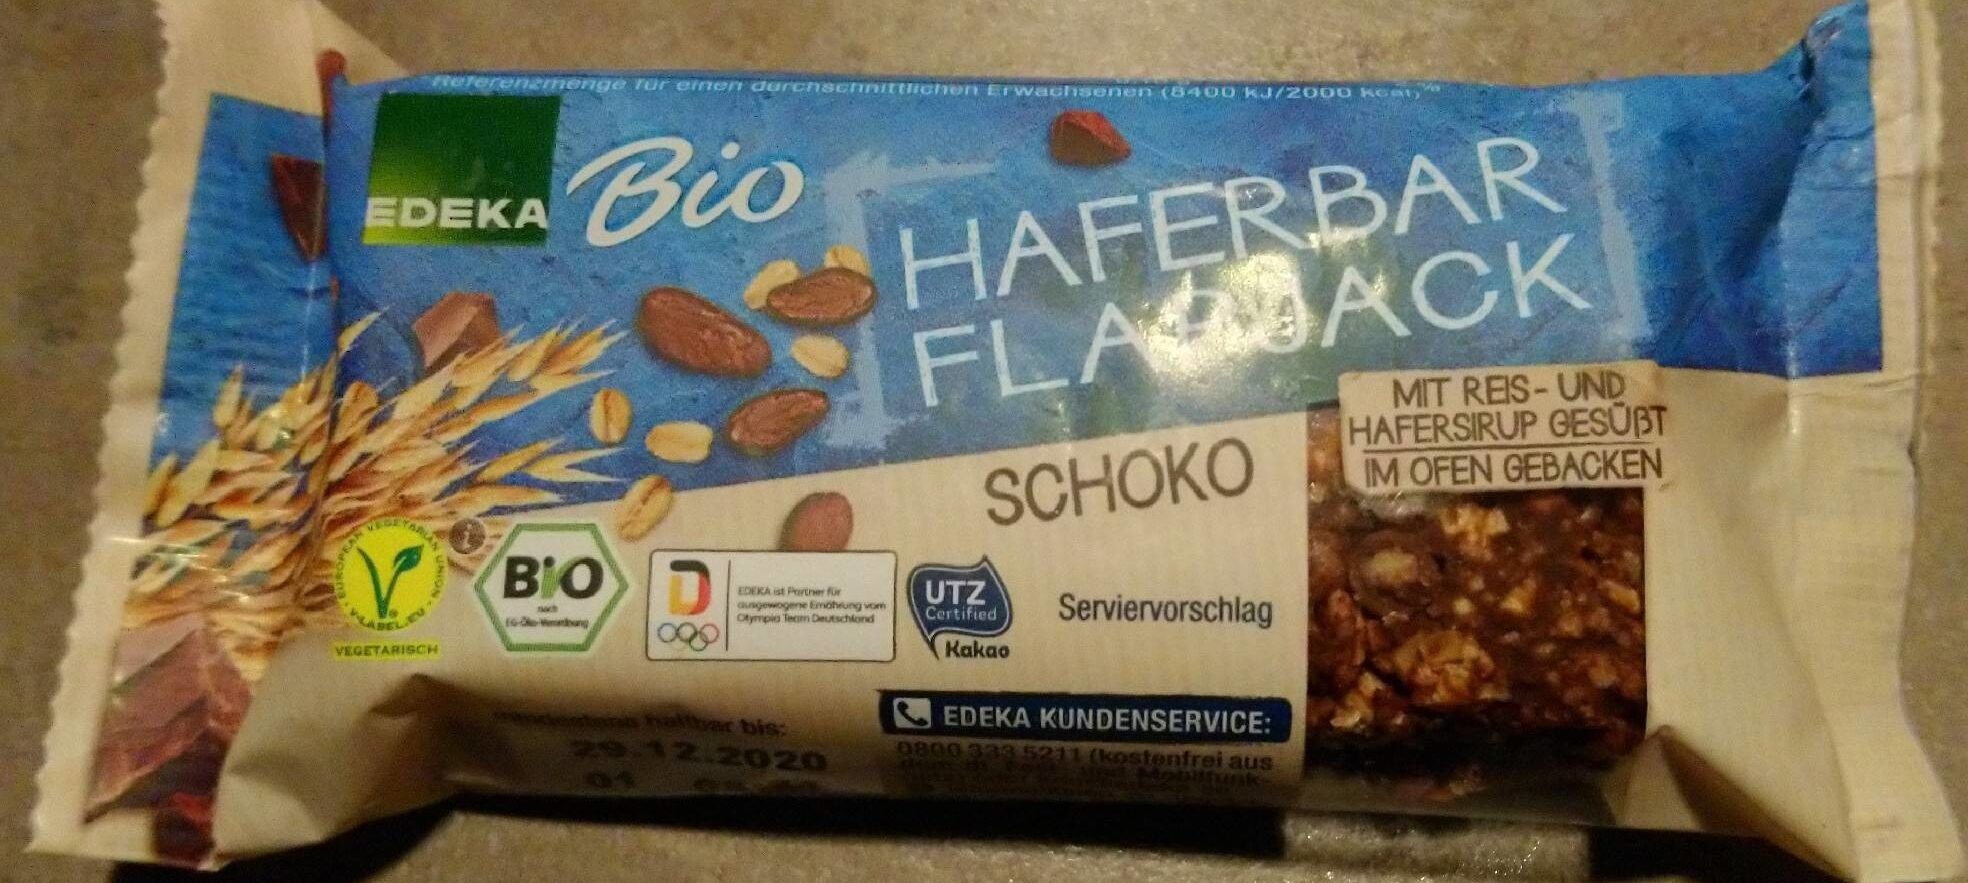 Haferbar Flapjack Schoko - Produkt